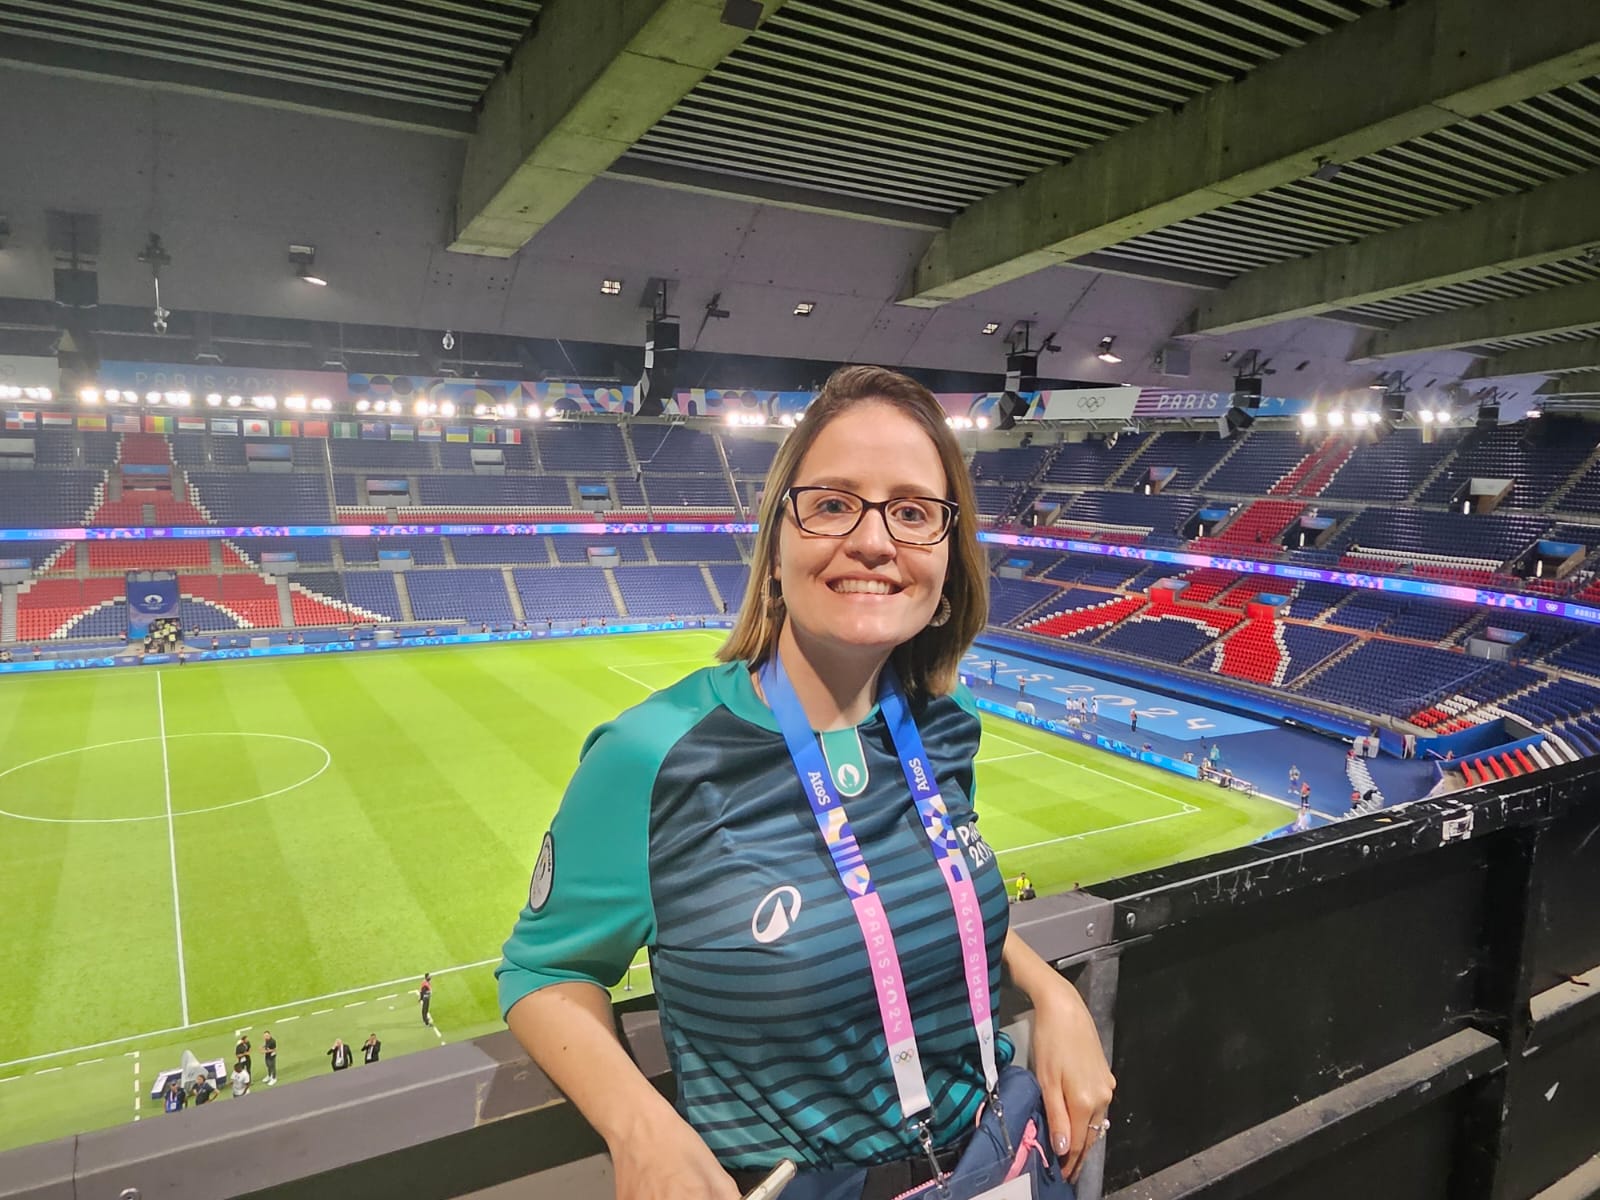 mulher voluntária nas Olímpiadas de Paris 2024 dentro de estádio de futebol